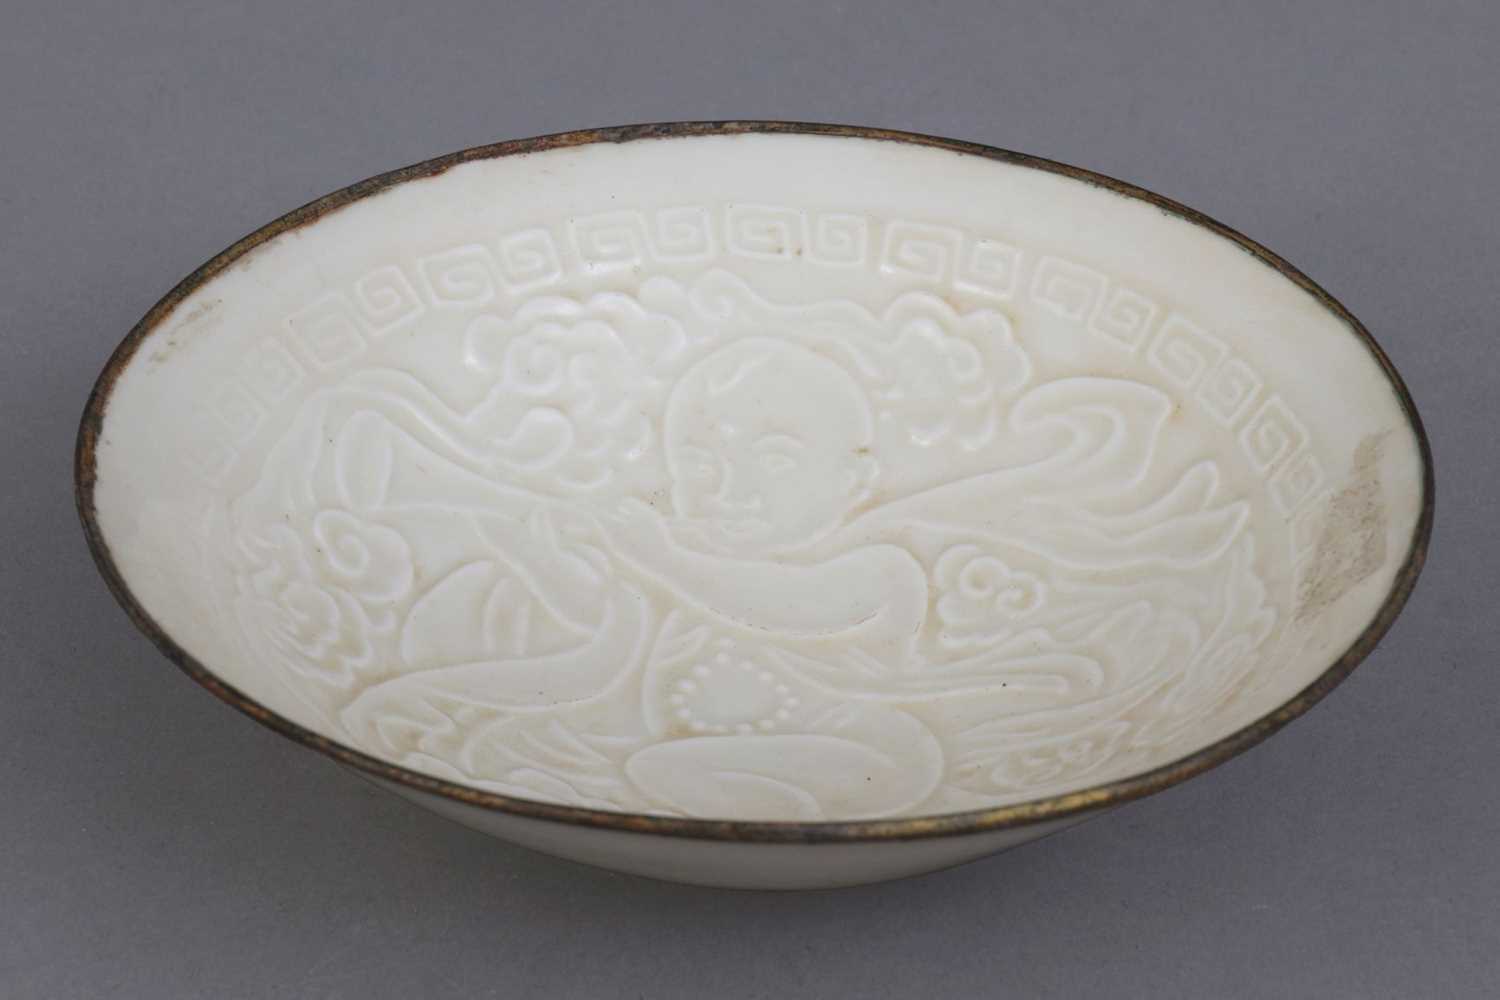 Lot 59 - Chinesische Porzellanschale im Stile der Song Dynastie